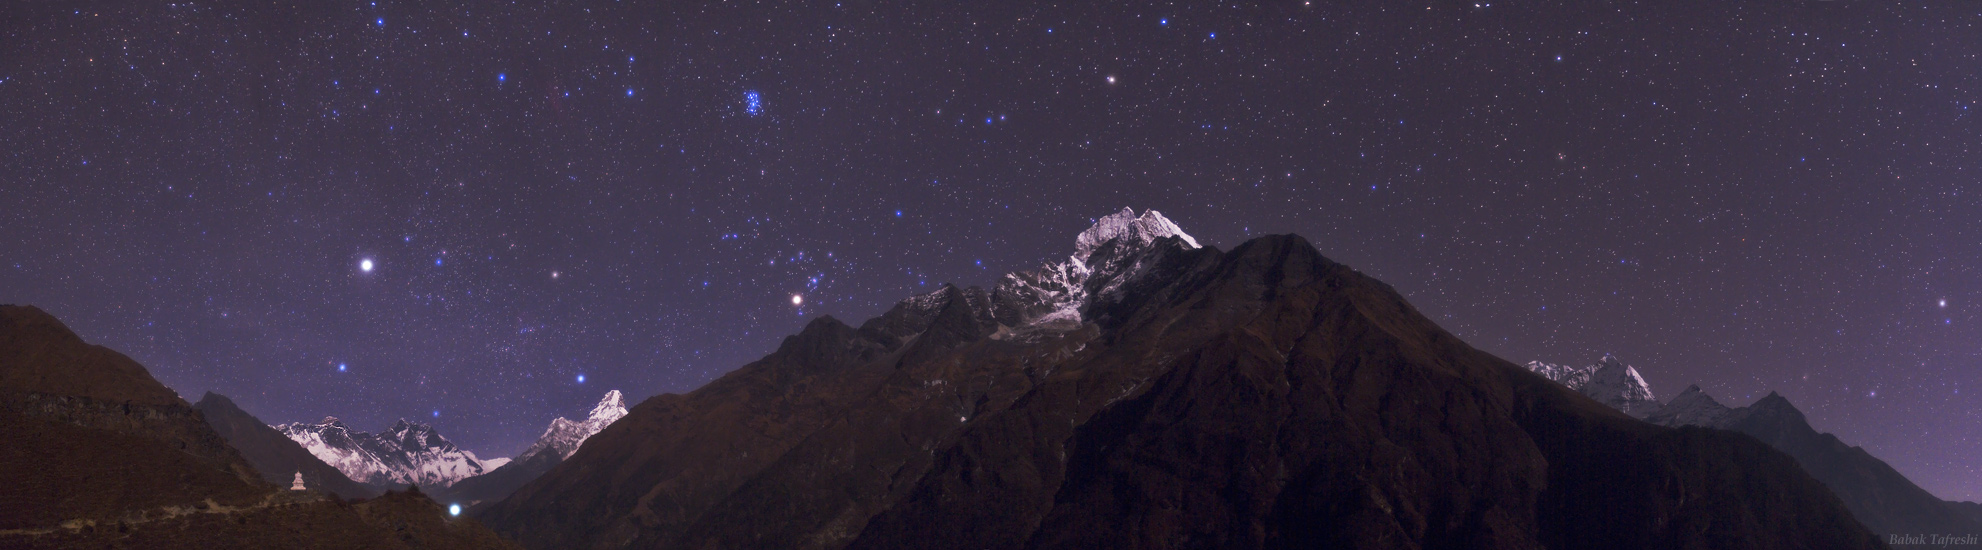 Небесный пейзаж в Гималаях